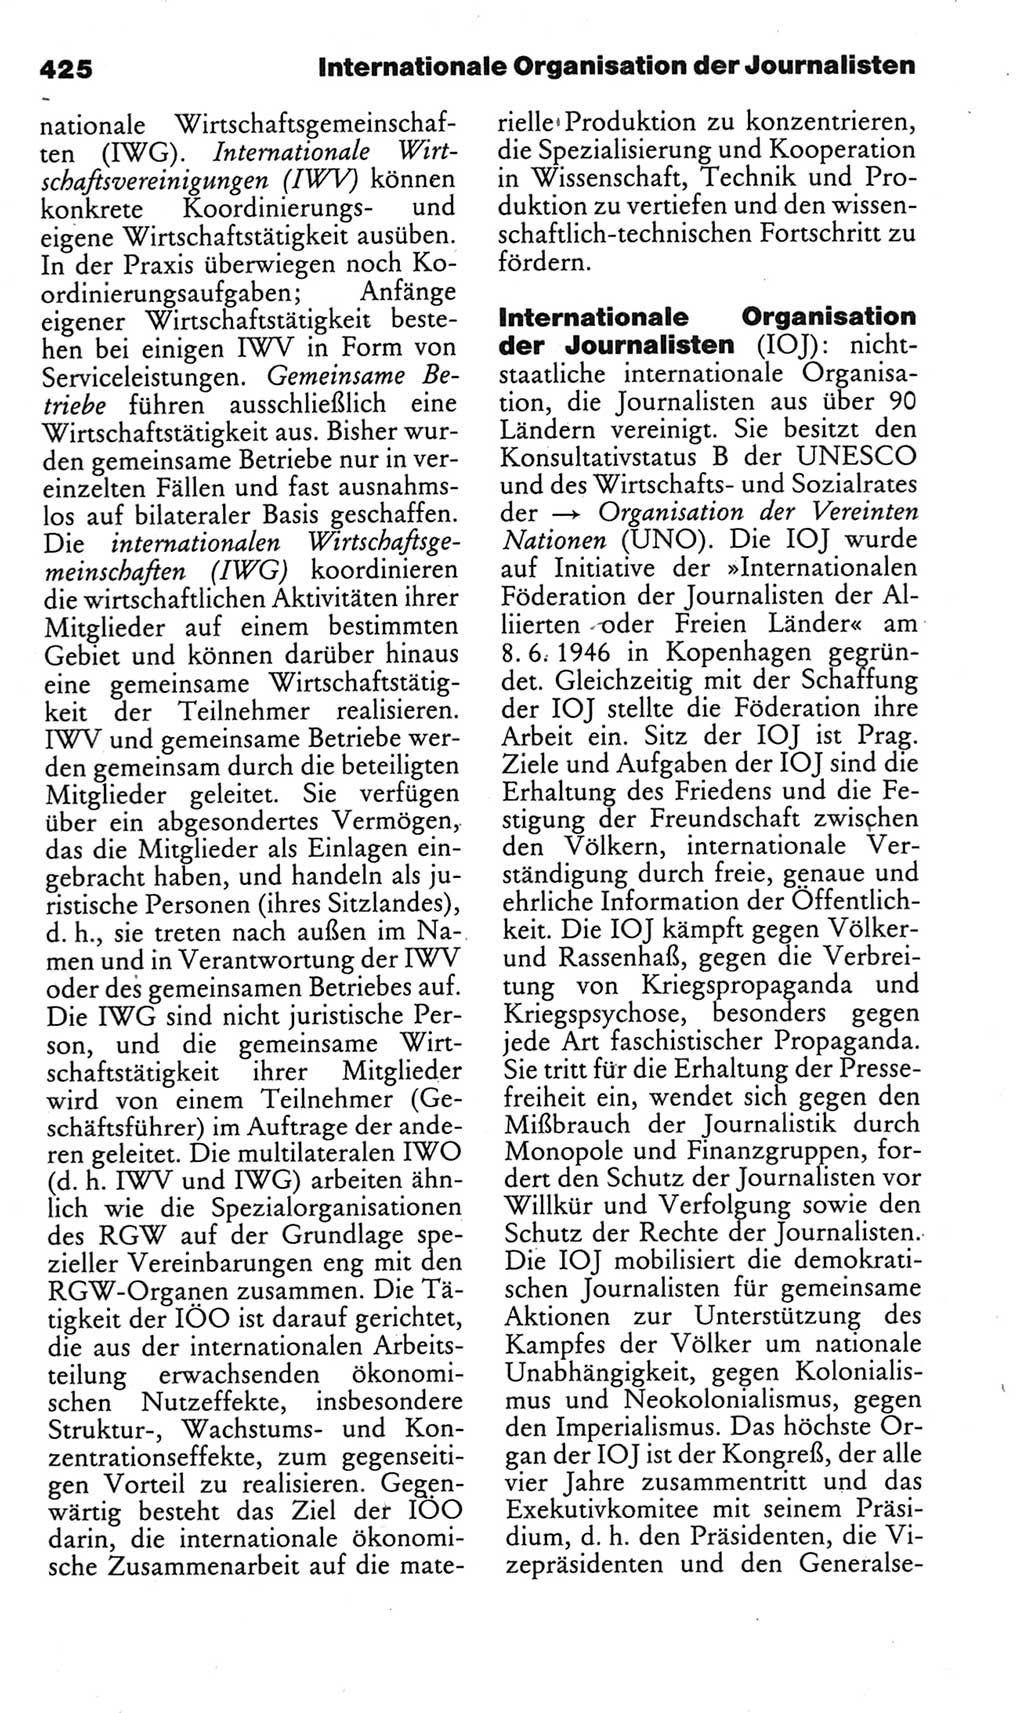 Kleines politisches Wörterbuch [Deutsche Demokratische Republik (DDR)] 1983, Seite 425 (Kl. pol. Wb. DDR 1983, S. 425)